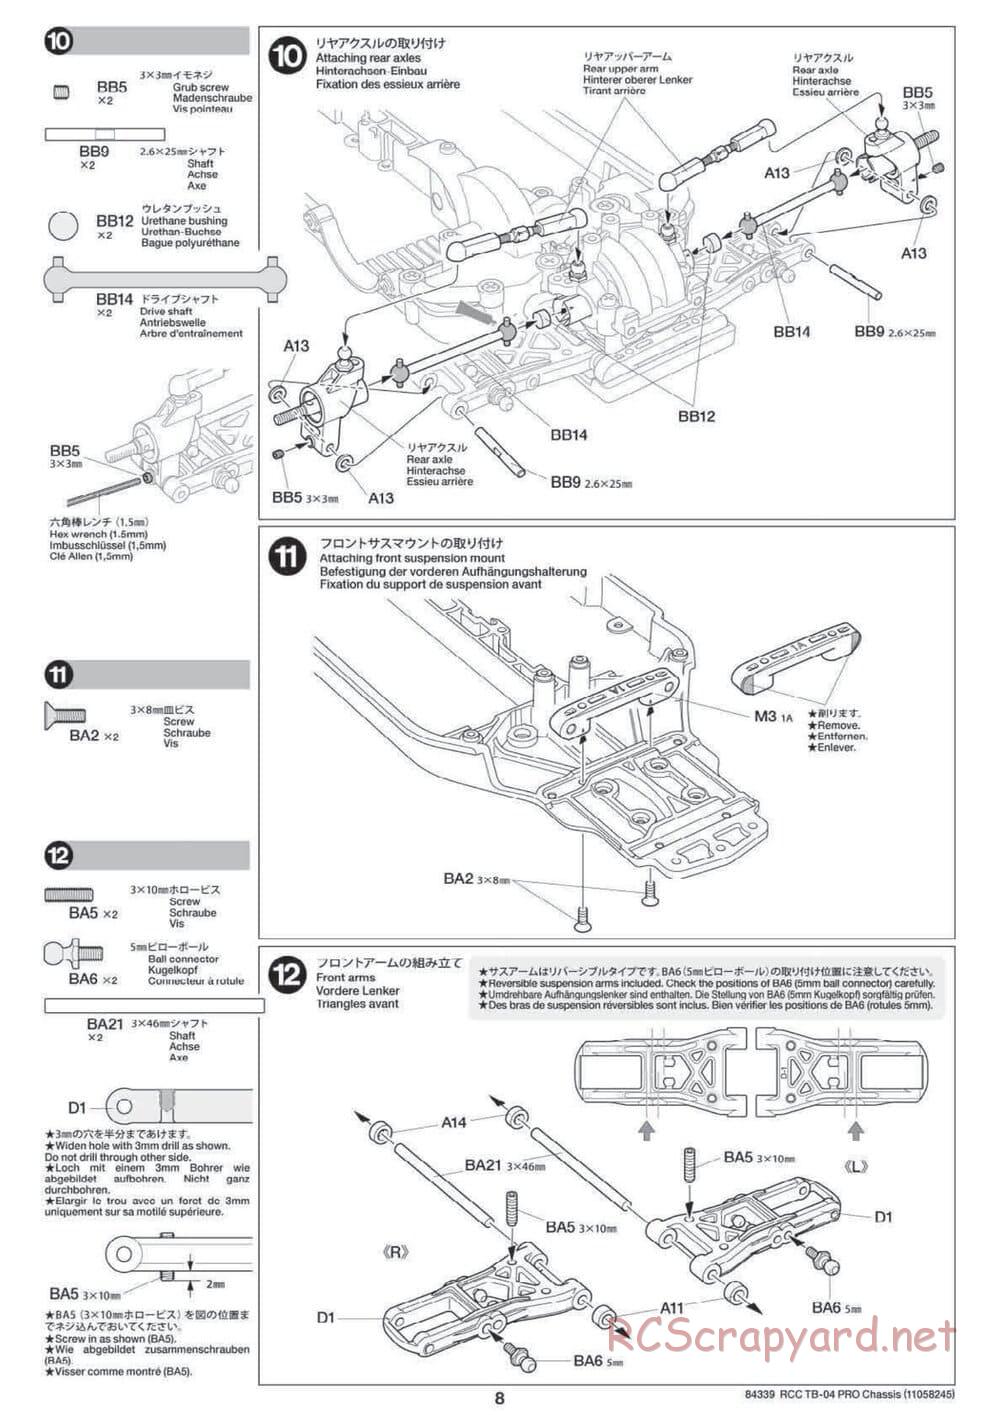 Tamiya - TB-04 Pro Chassis - Manual - Page 8